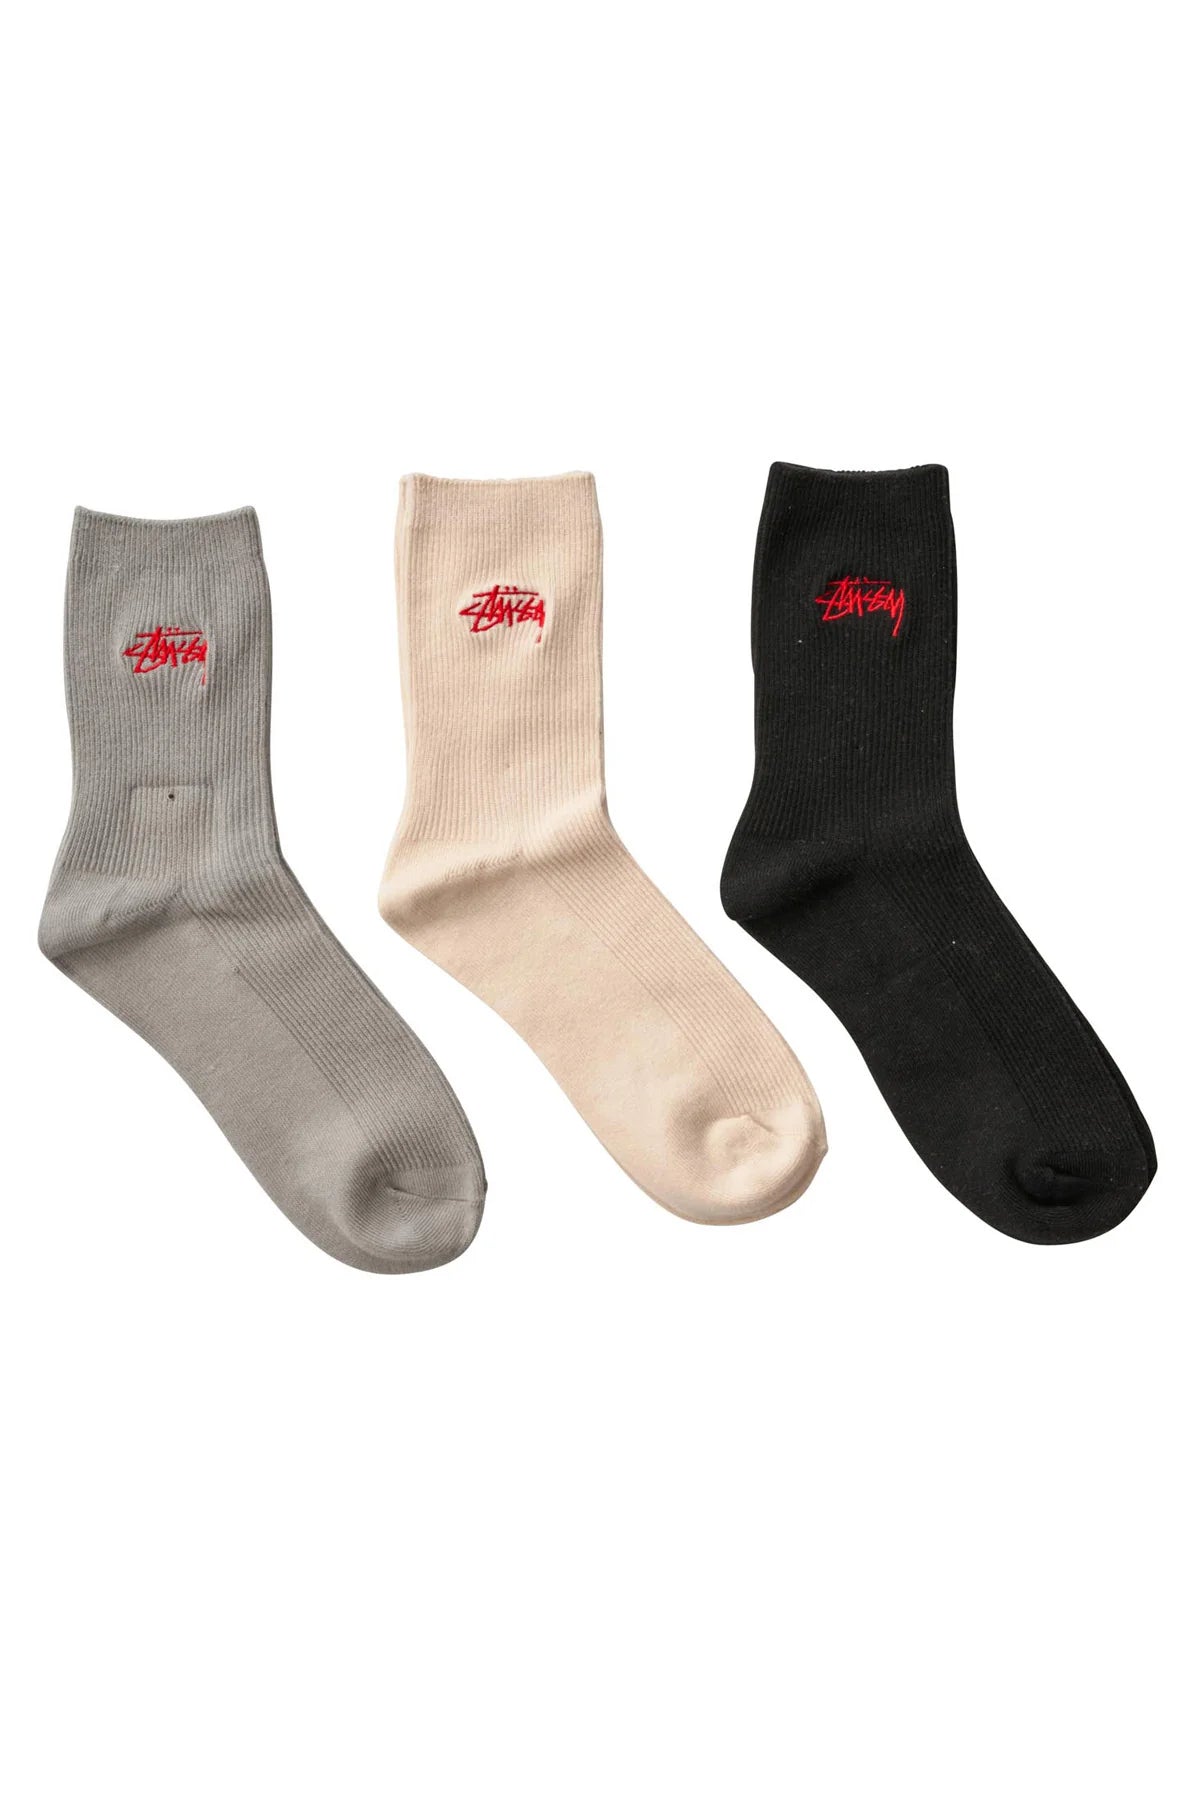 STUSSY Stock Rib 3pk Womens Socks - Multi